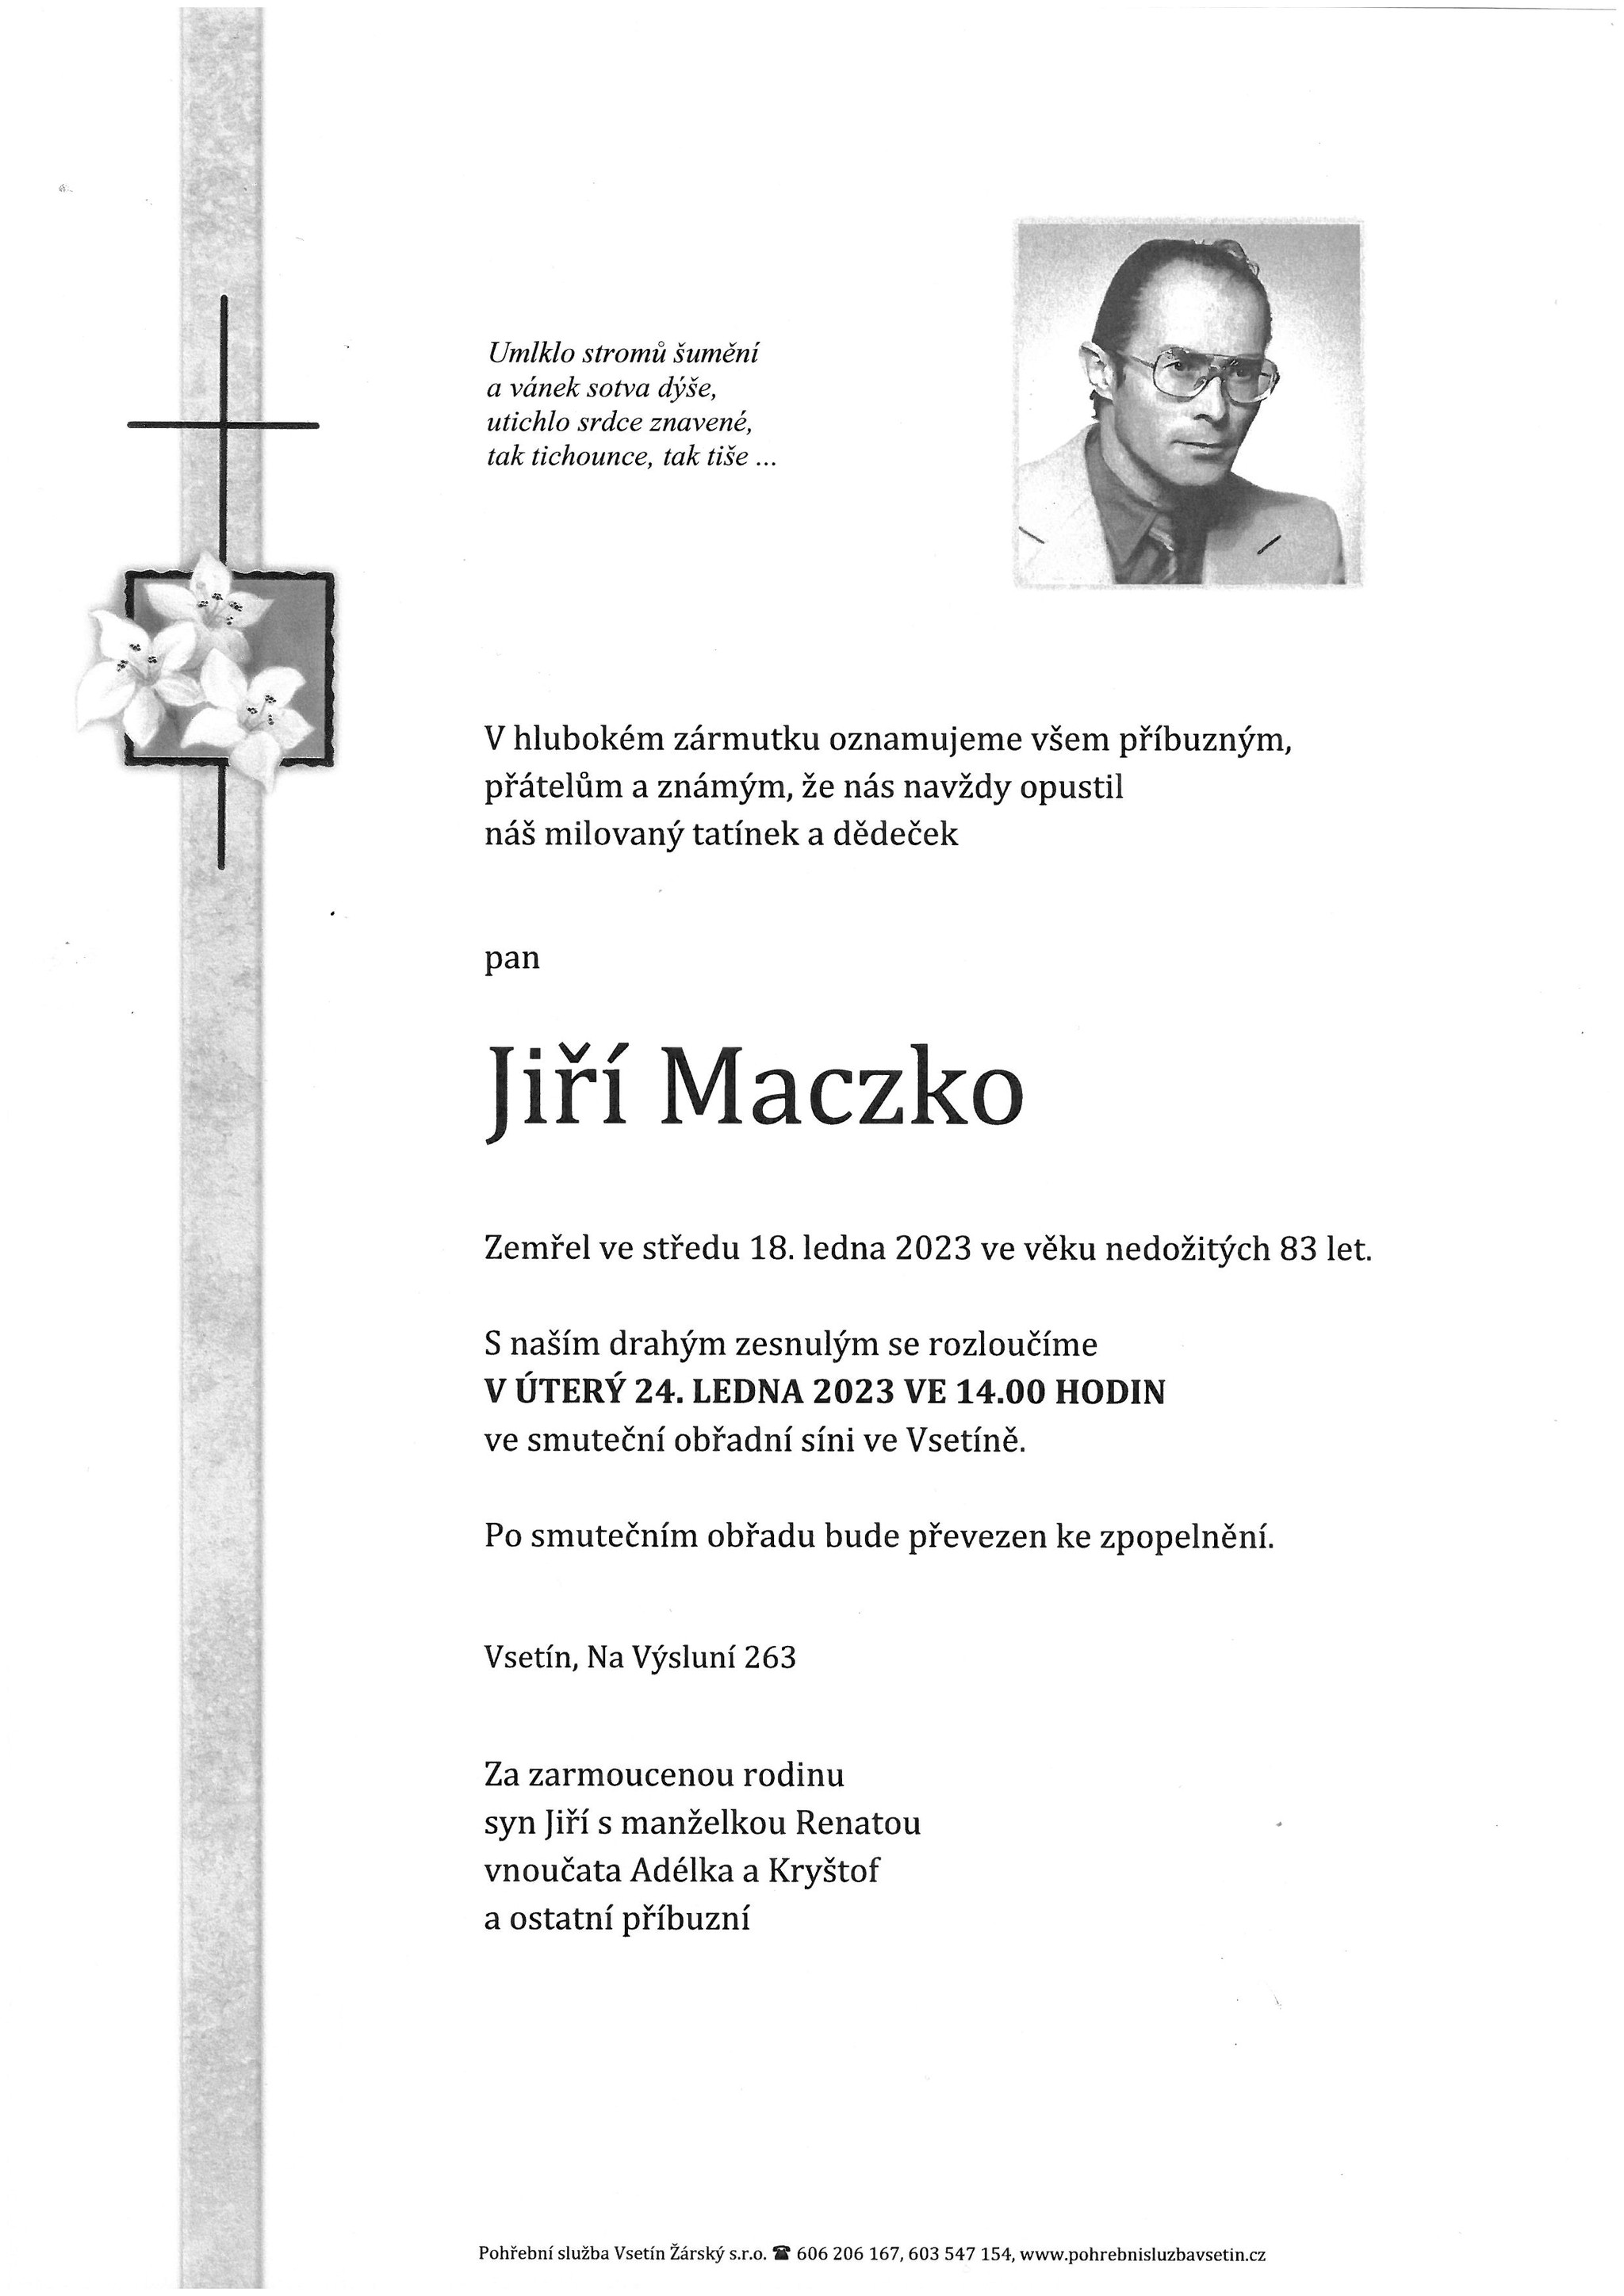 Jiří Maczko